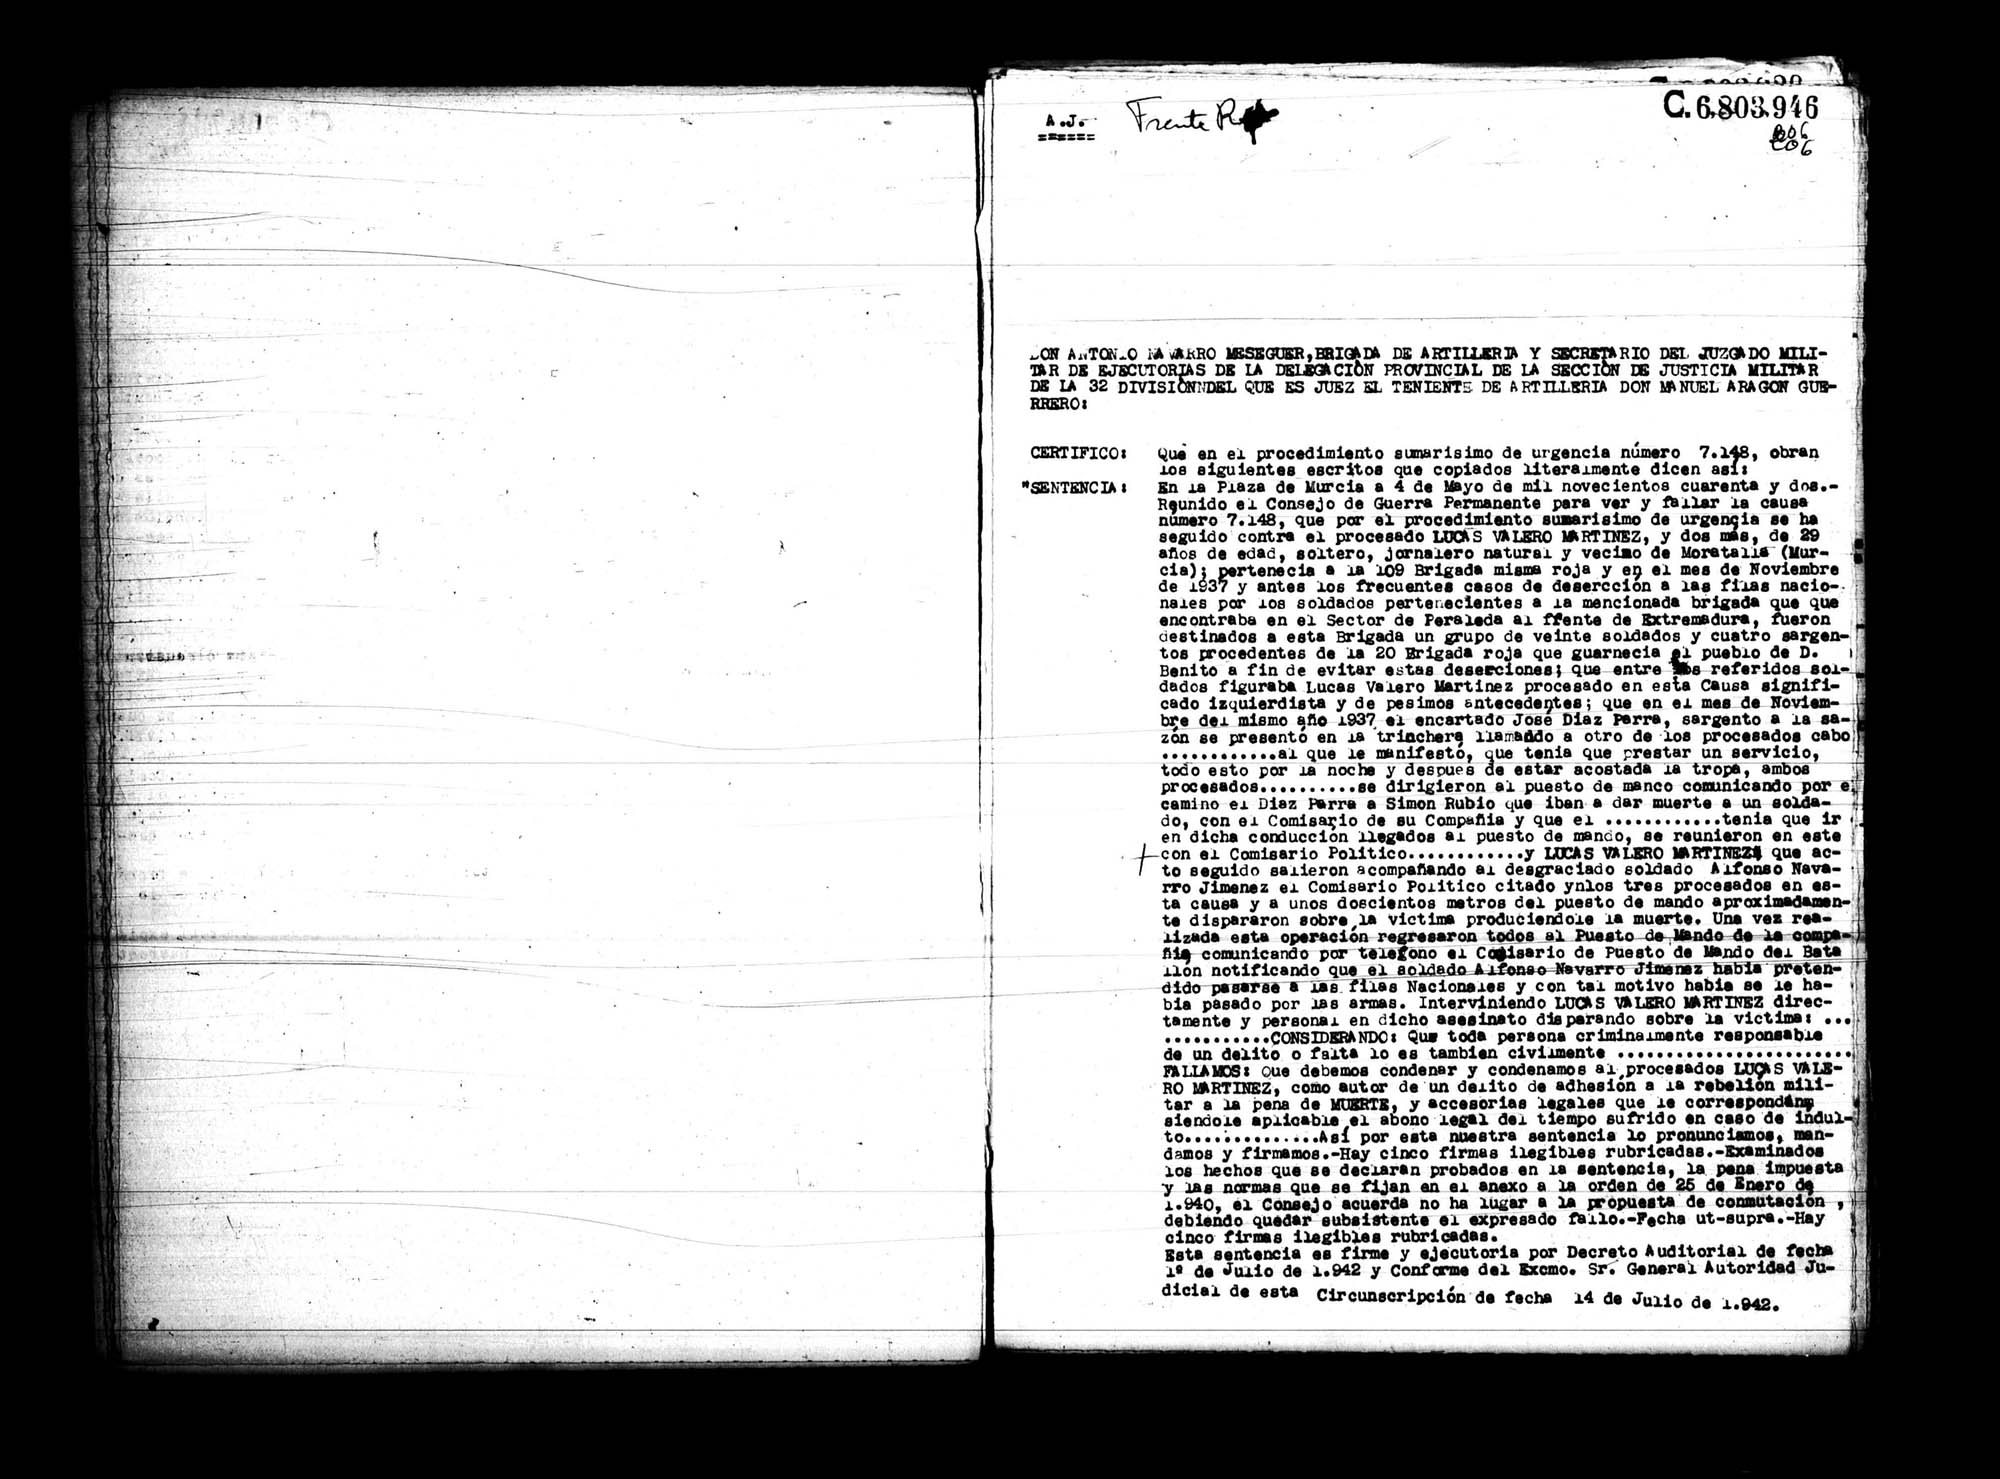 Certificado de la sentencia pronunciada contra Lucas Valero Martínez, causa 7148, el 4 de mayo de 1942 en Murcia.